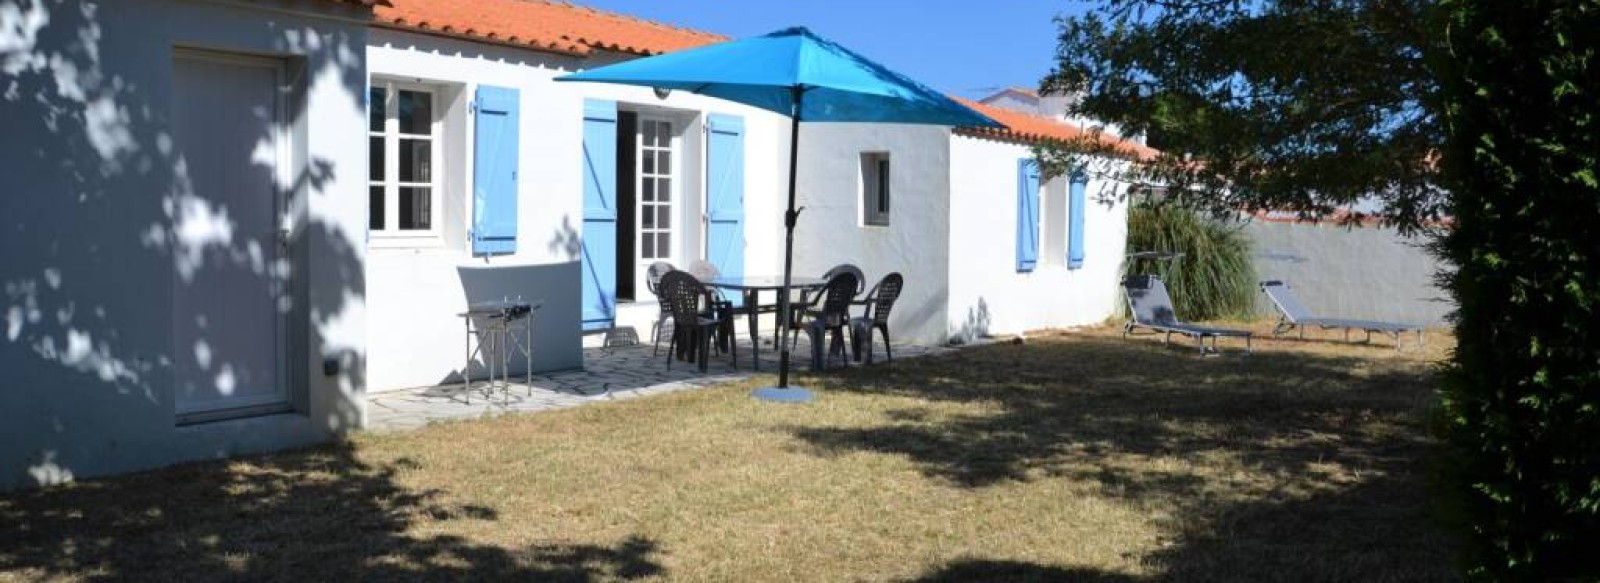 Maison de vacances pour 6 personnes a l'Epine sur Noirmoutier